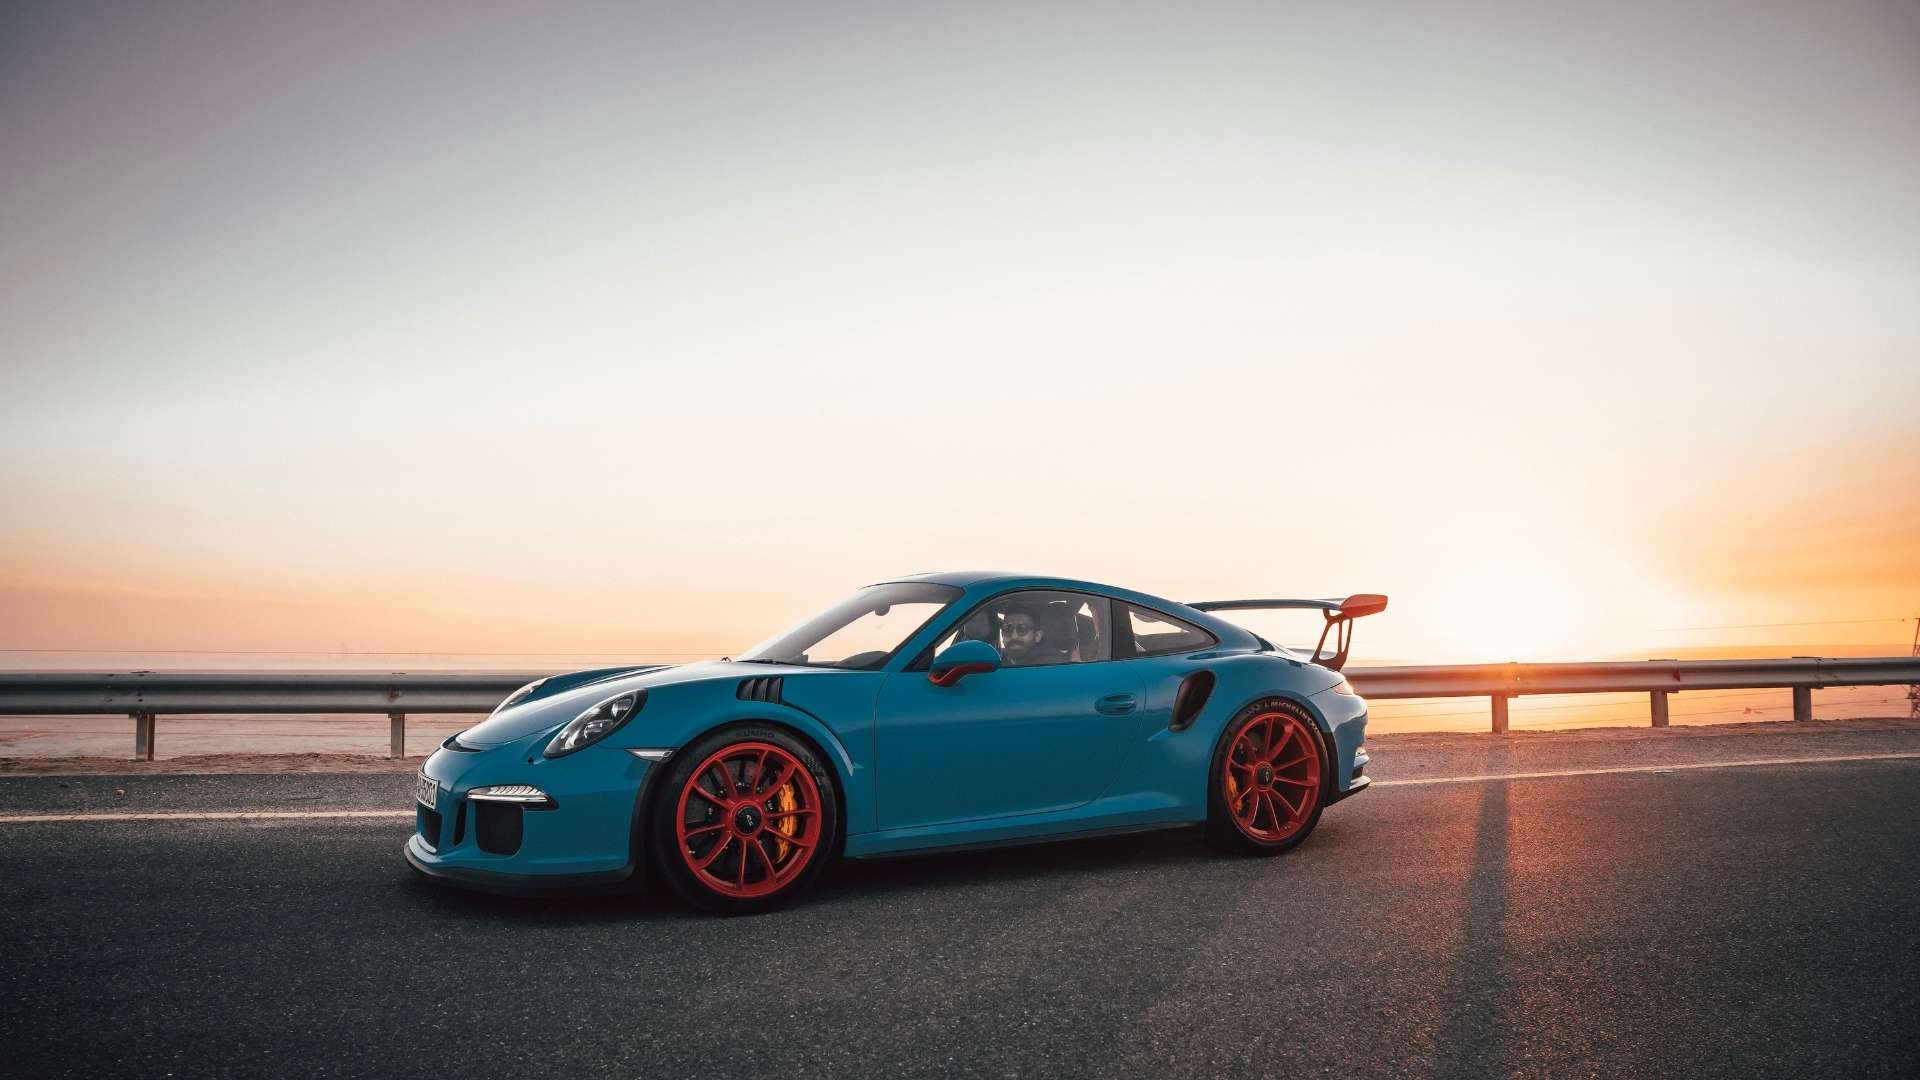 blue Porsche with red wheels